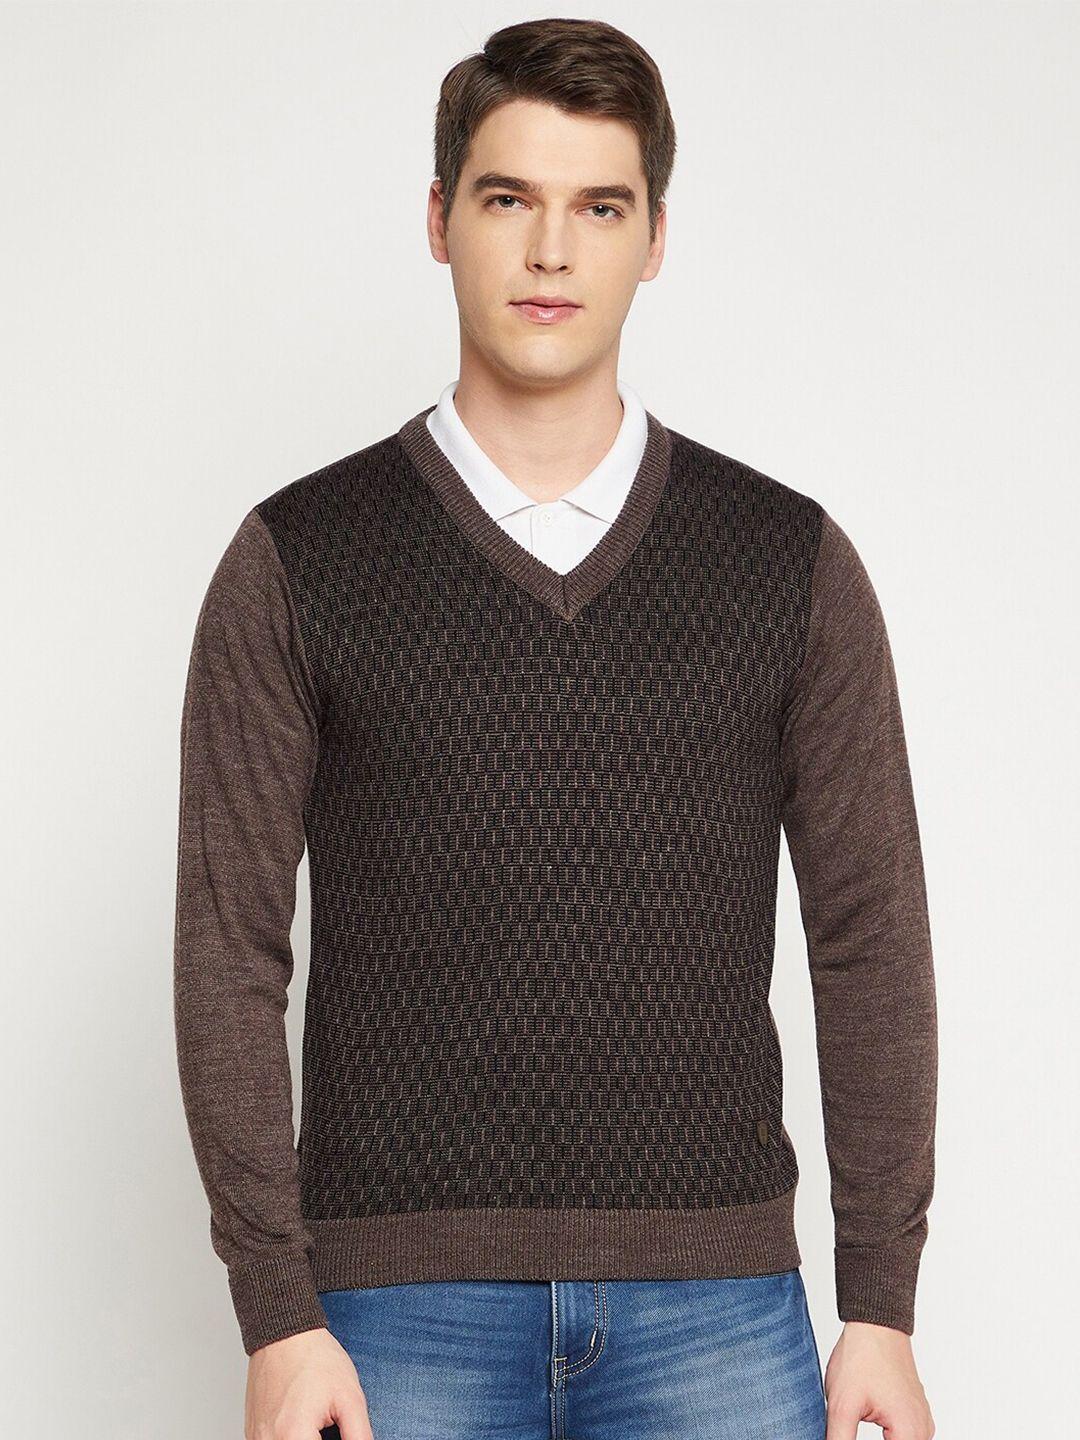 duke-men-brown-&-black-printed-pullover